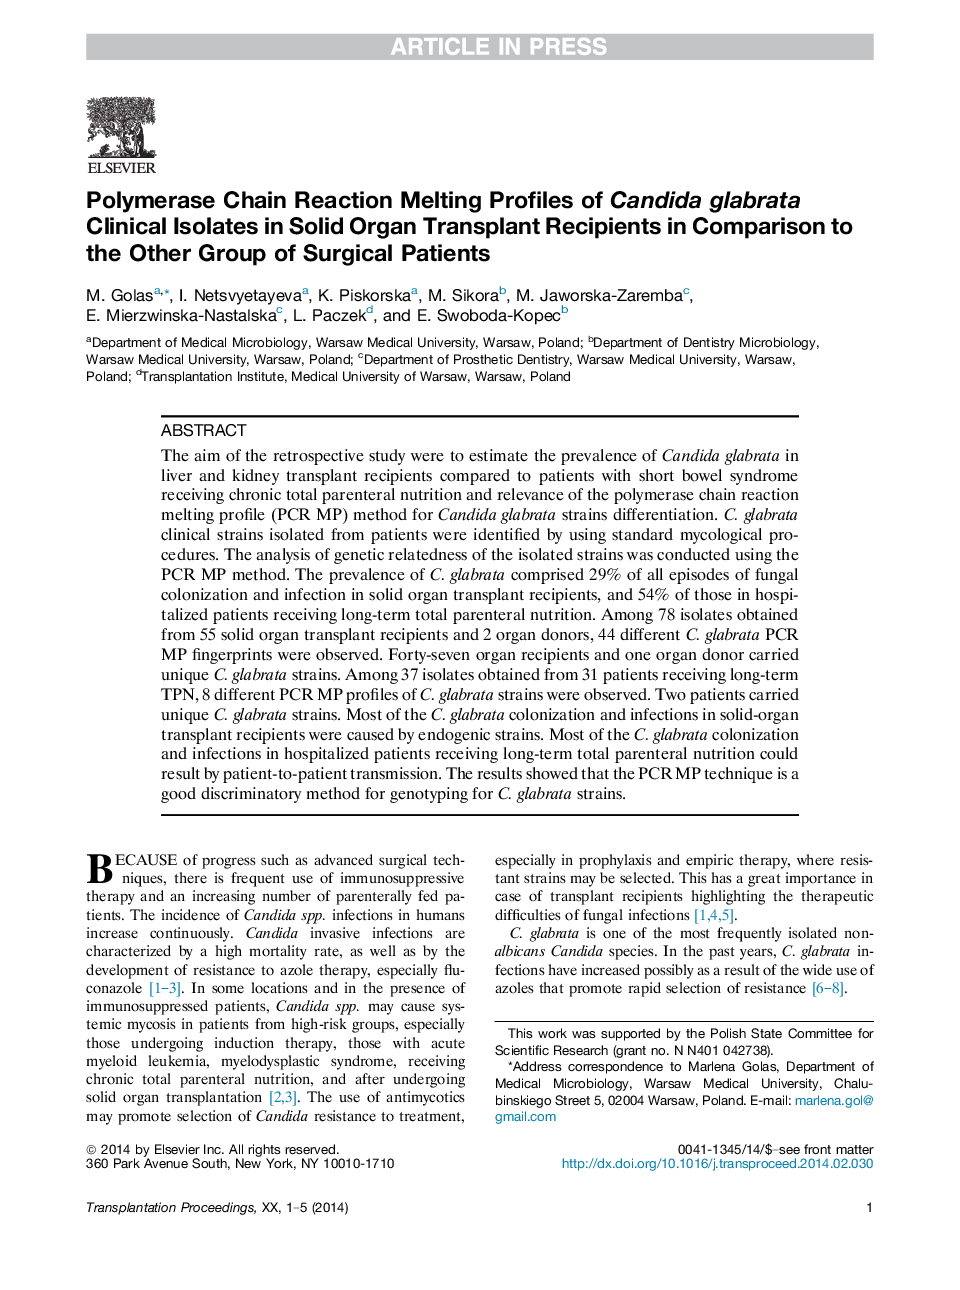 واکنش های زنجیره ای پلیمراز، مشخصات ذوب شدن جدایه های بالینی کاندیدا گلابراتا در گیرنده های پیوند عضو بدن در مقایسه با سایر گروه جراحی 